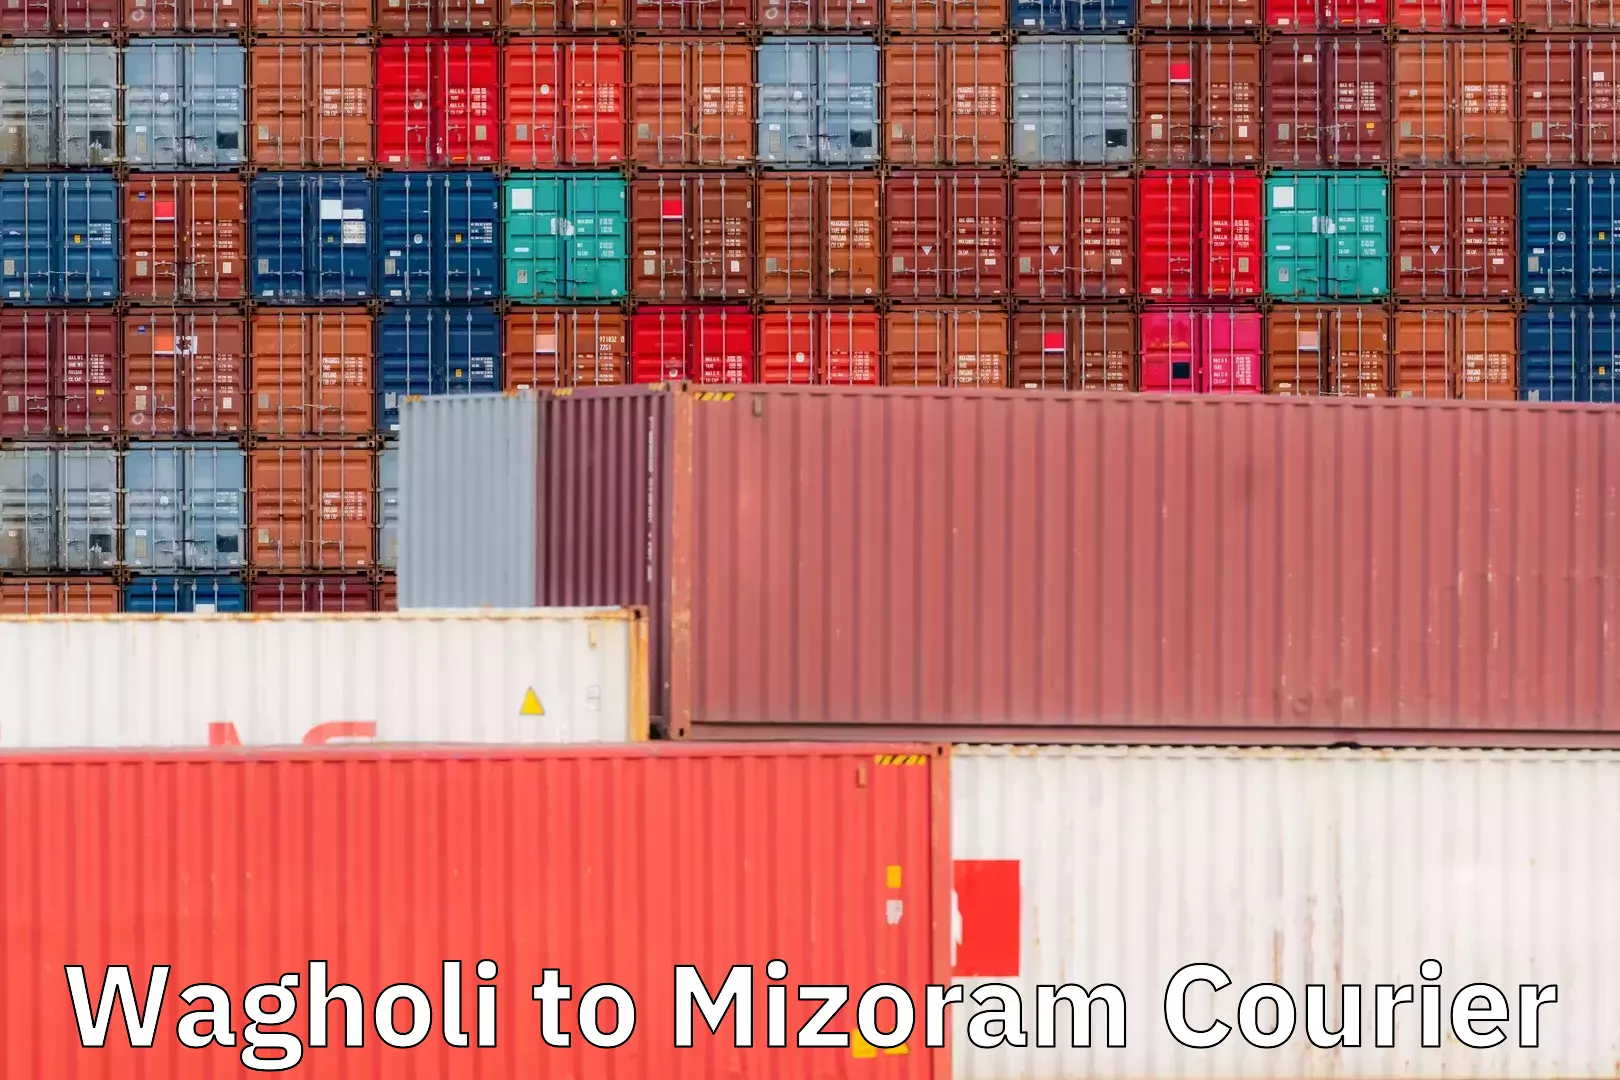 Expedited shipping methods Wagholi to Mizoram